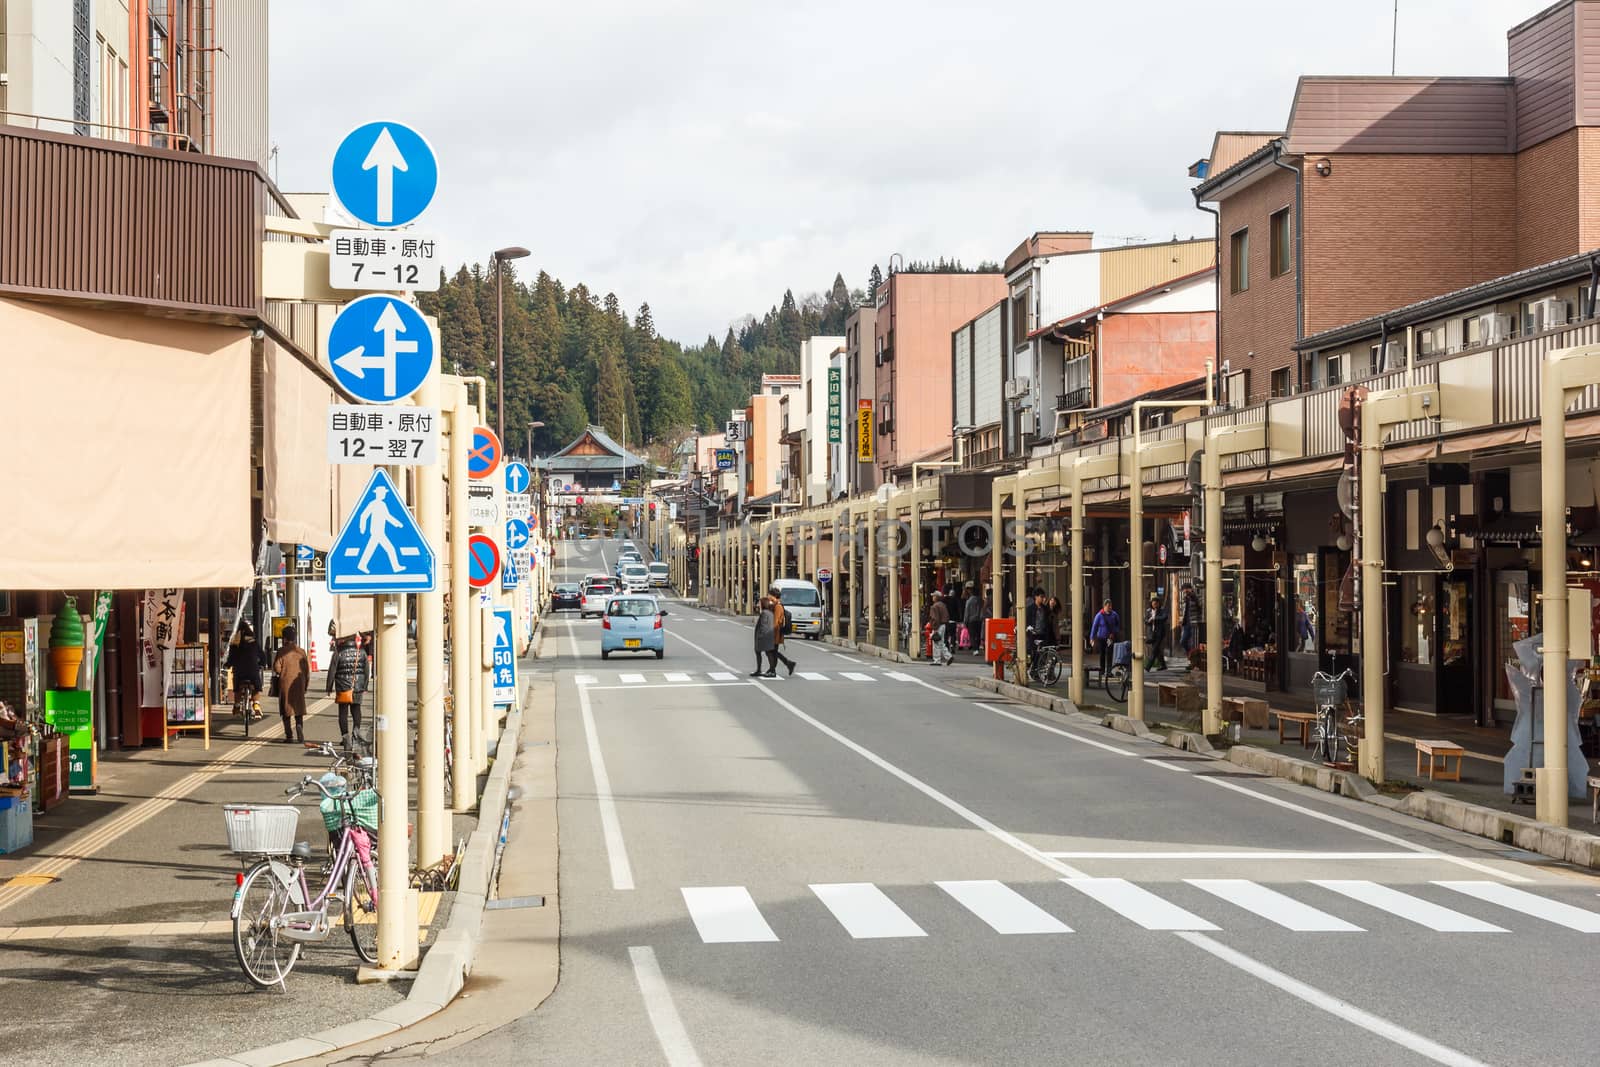 Takayama, Japan - December 24, 2015 : Street in Takayama old town. With traffic sign on December 24, 2015 in Takayama, Japan.